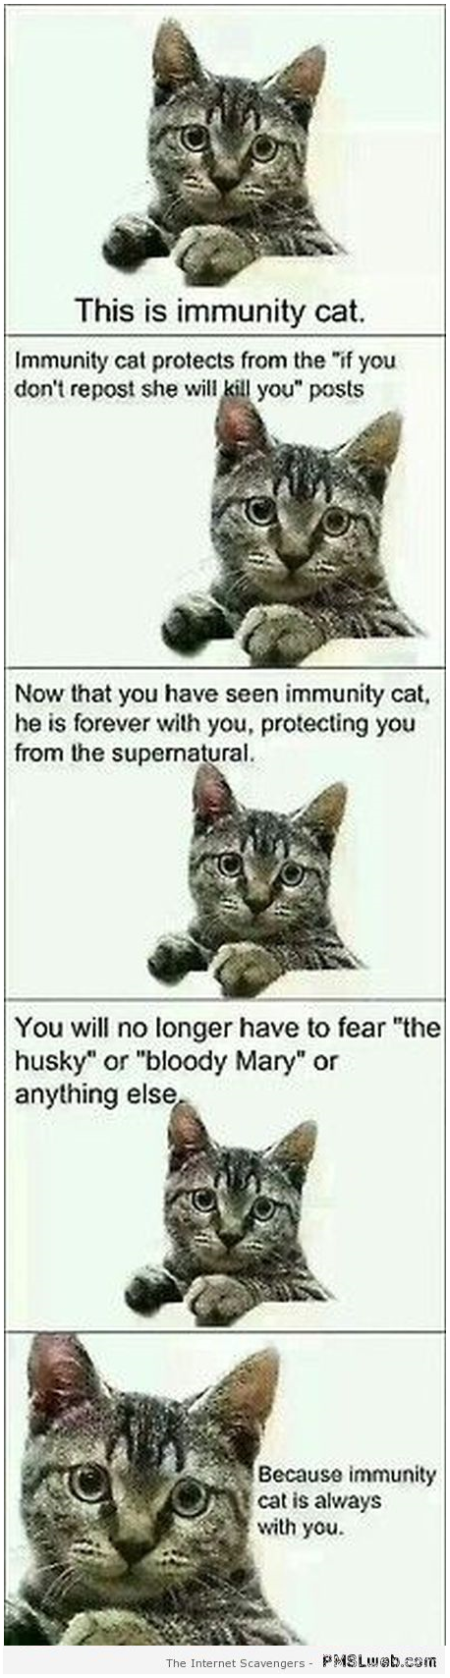 Funny immunity cat at PMSLweb.com